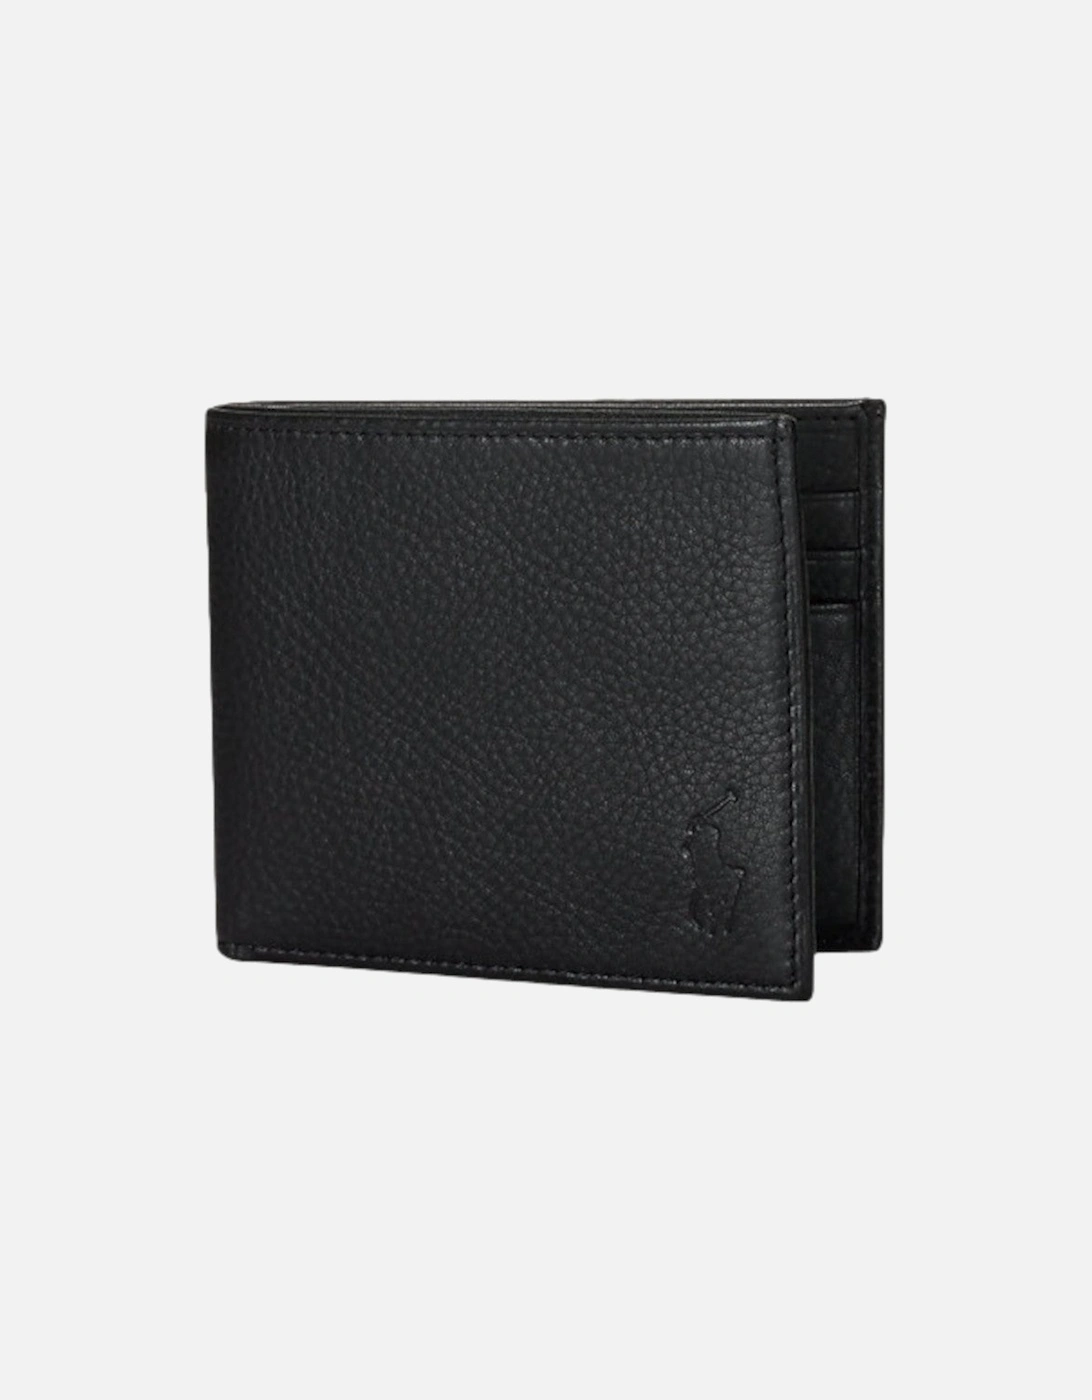 EU Billfold Wallet 001 Black, 3 of 2